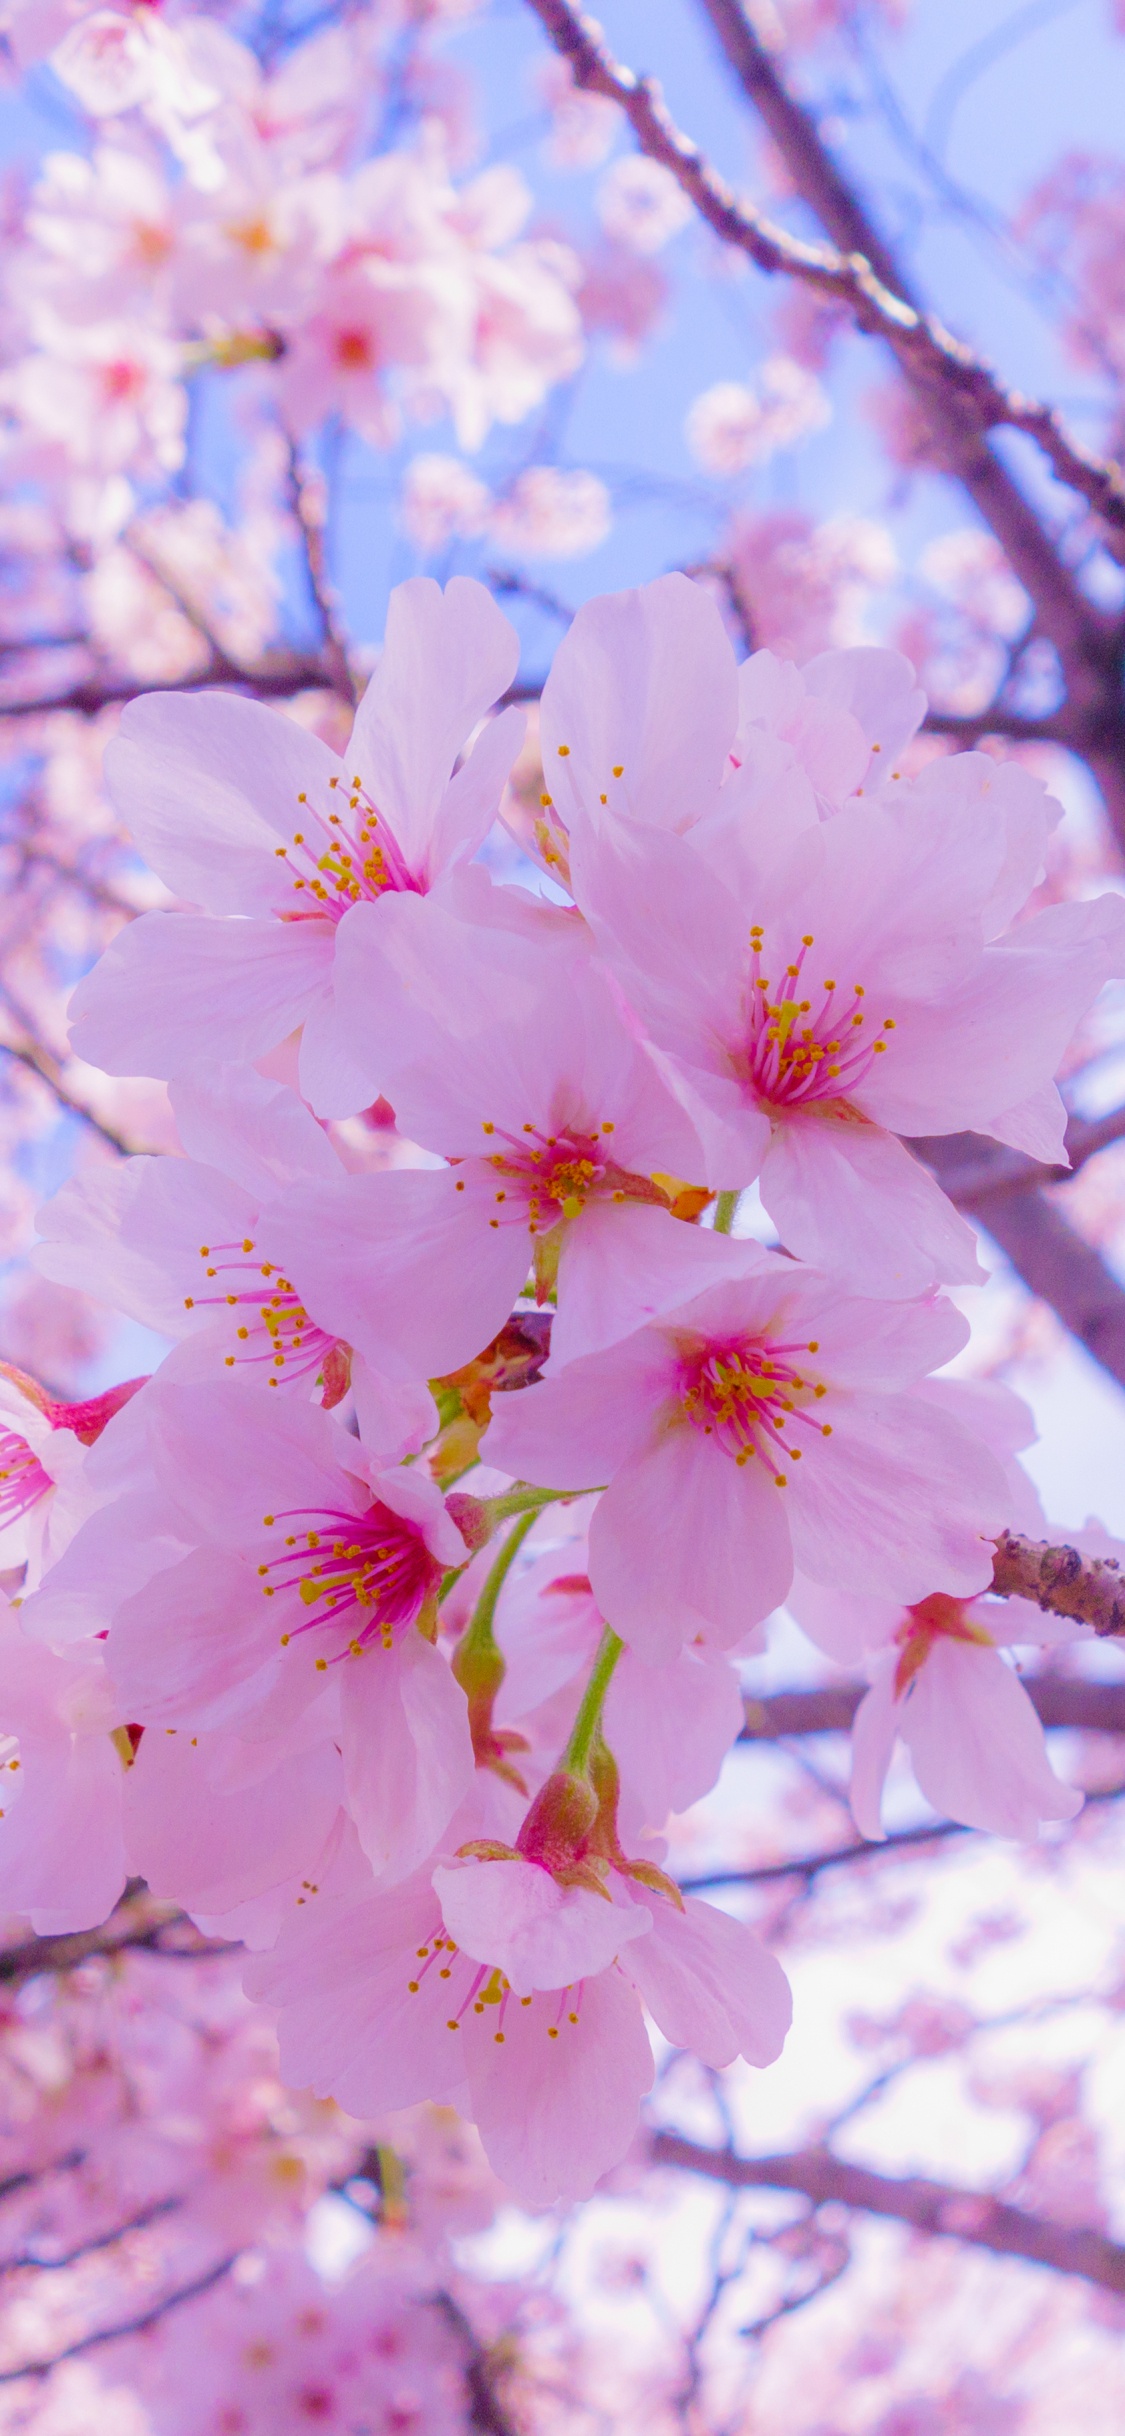 樱花, 开花, 粉红色, 弹簧, 树枝 壁纸 1125x2436 允许